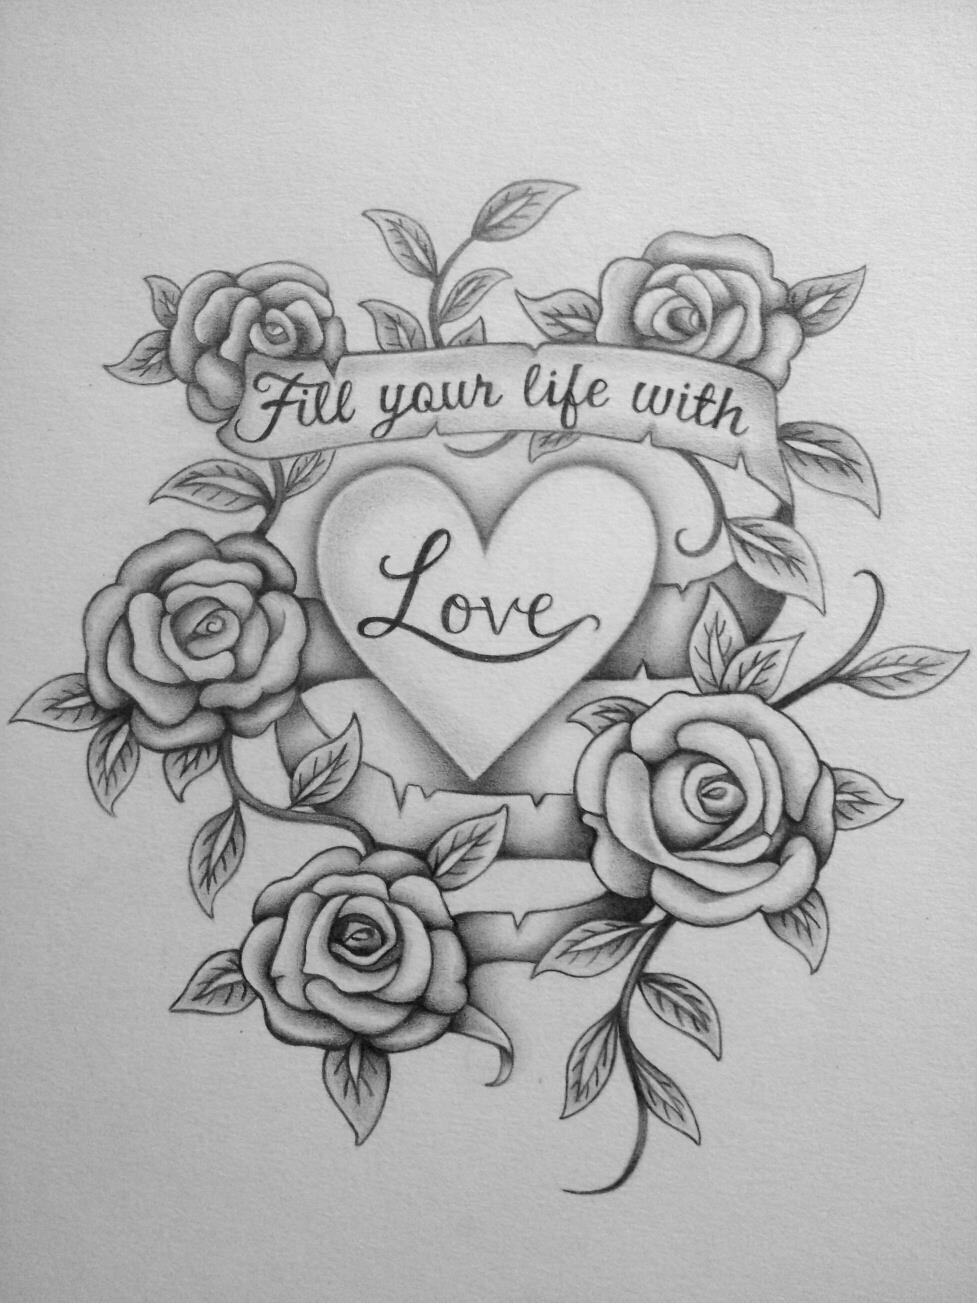 Love Roses Drawings - Gallery